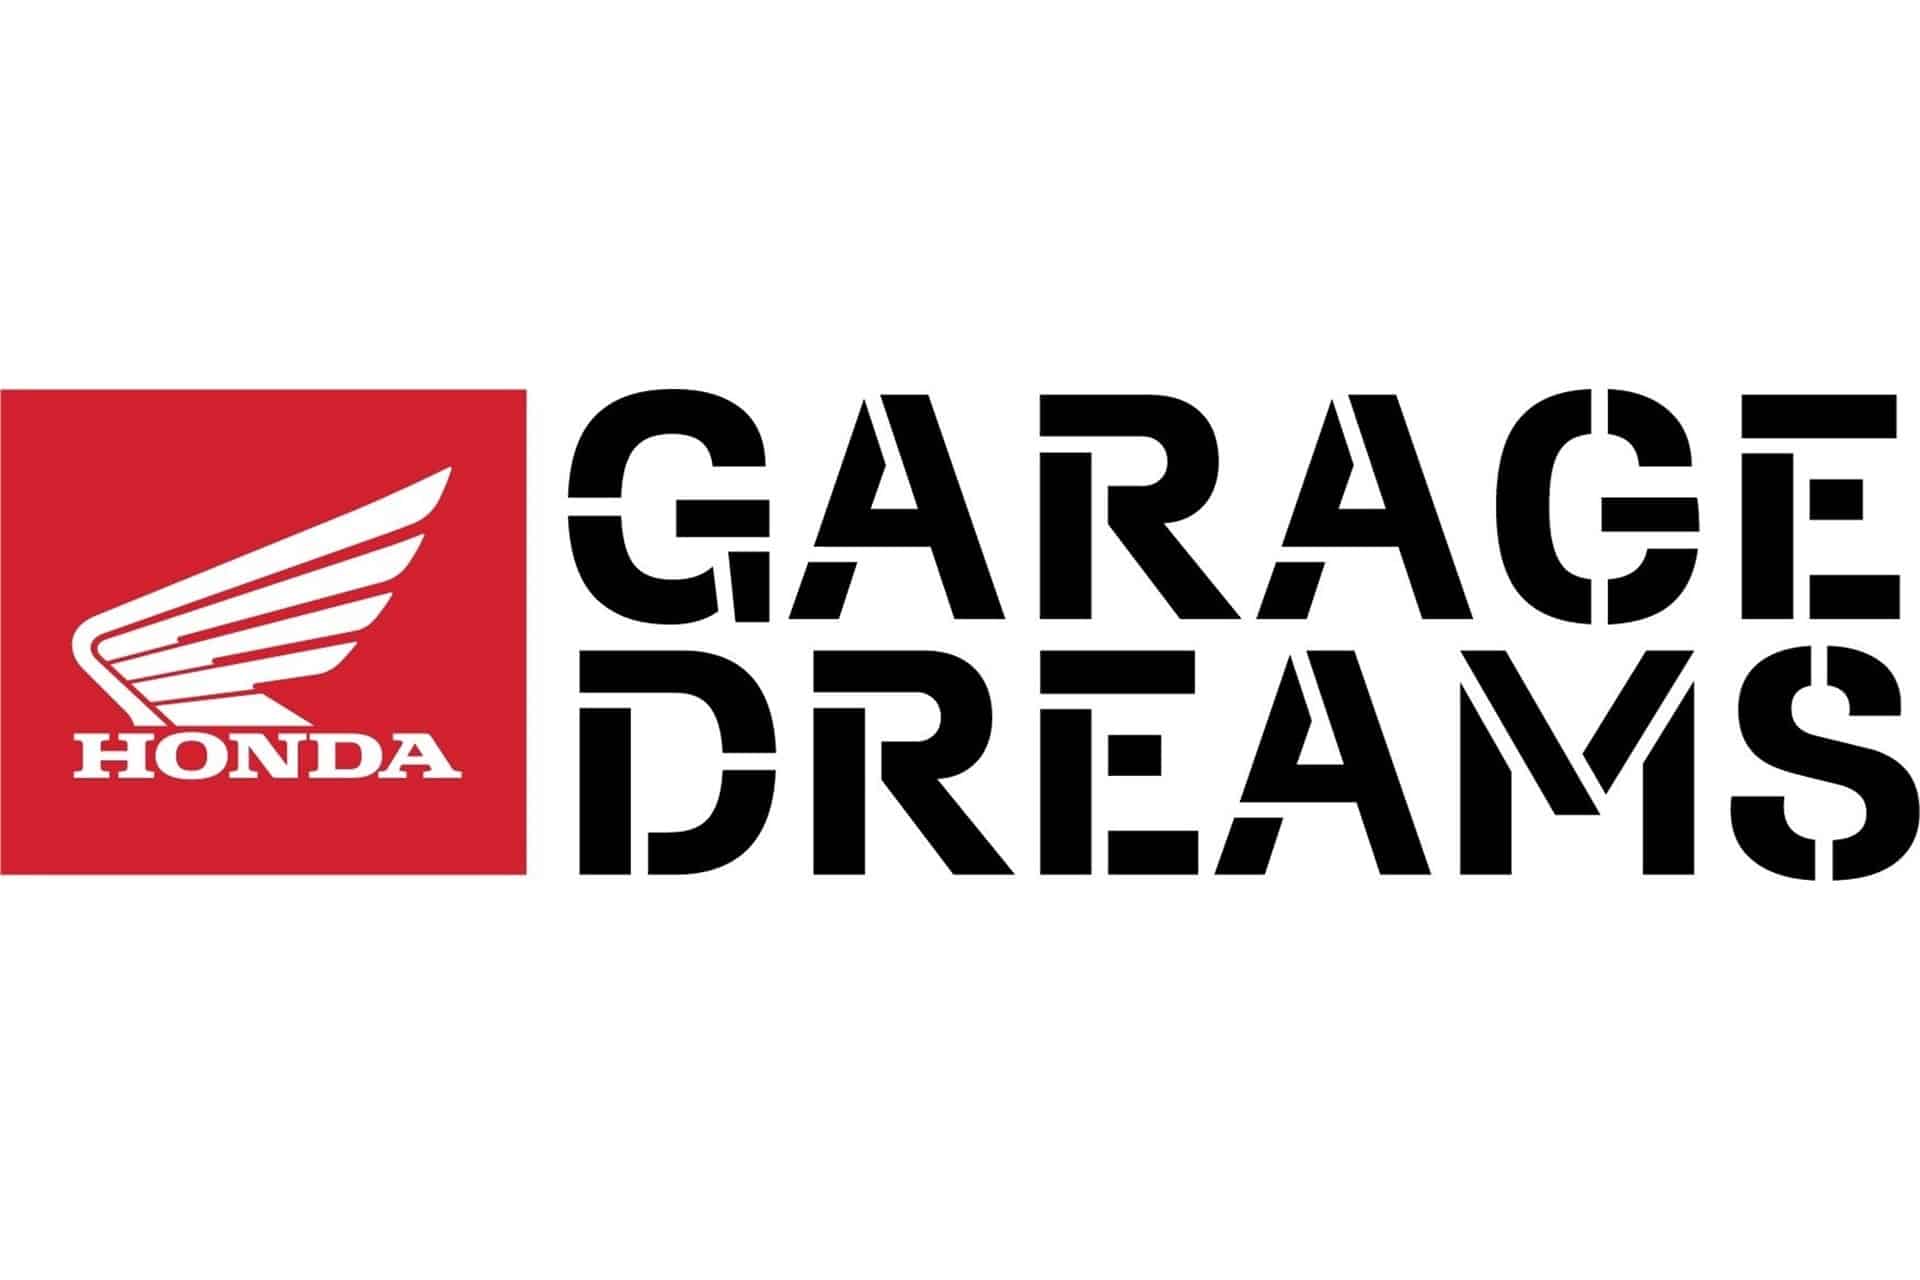 La IV Edición del Honda Garage Dreams Contest abre su plazo de votaciones